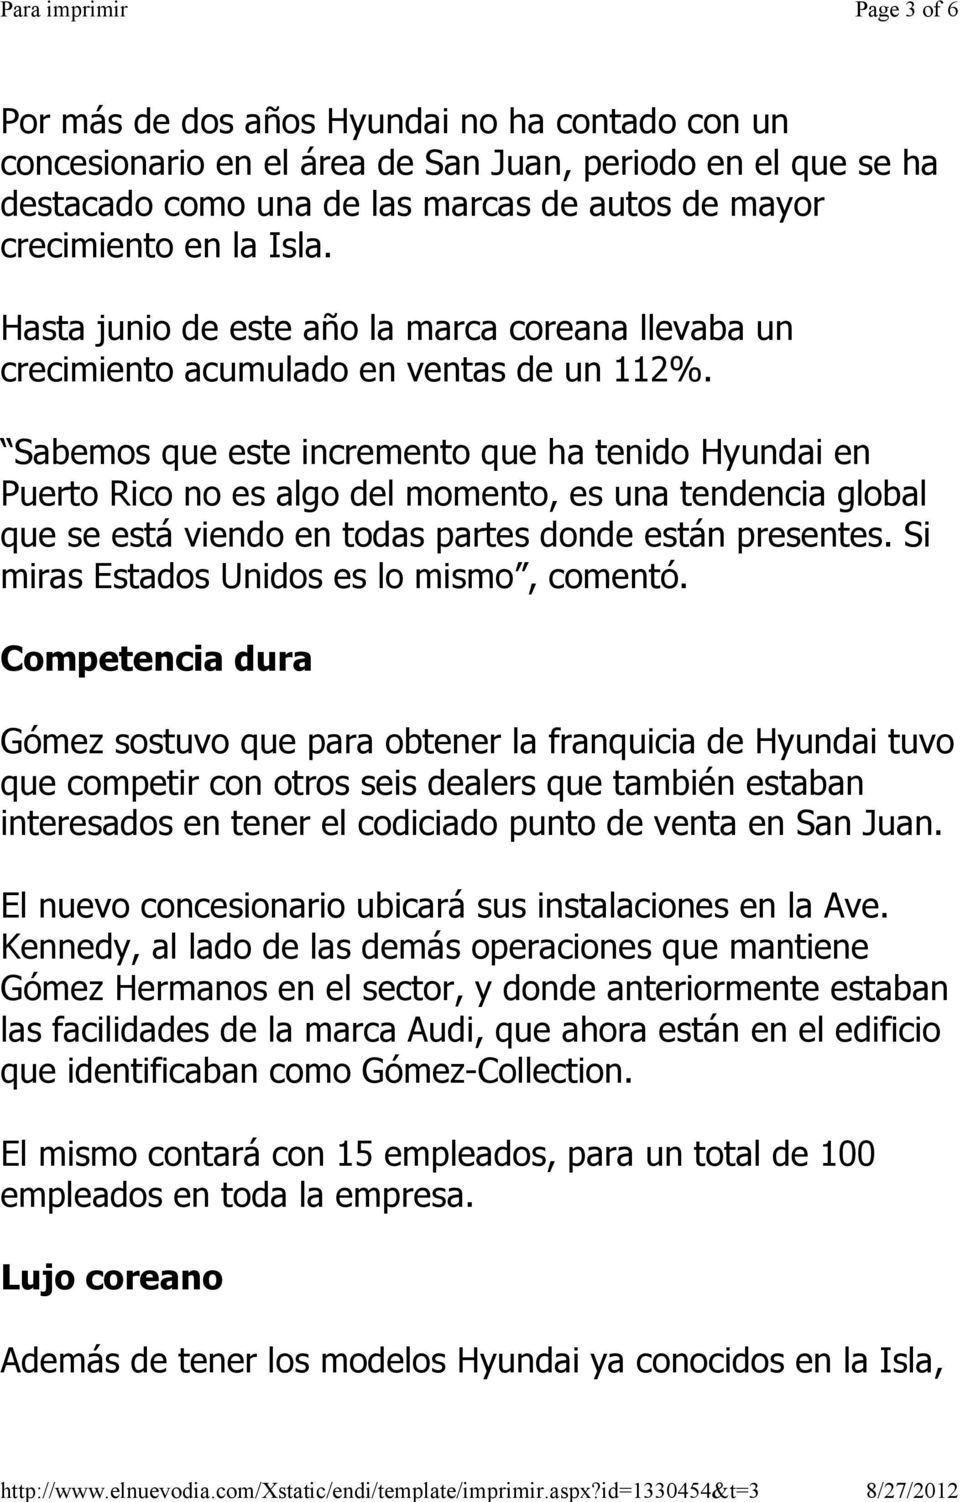 Sabemos que este incremento que ha tenido Hyundai en Puerto Rico no es algo del momento, es una tendencia global que se está viendo en todas partes donde están presentes.